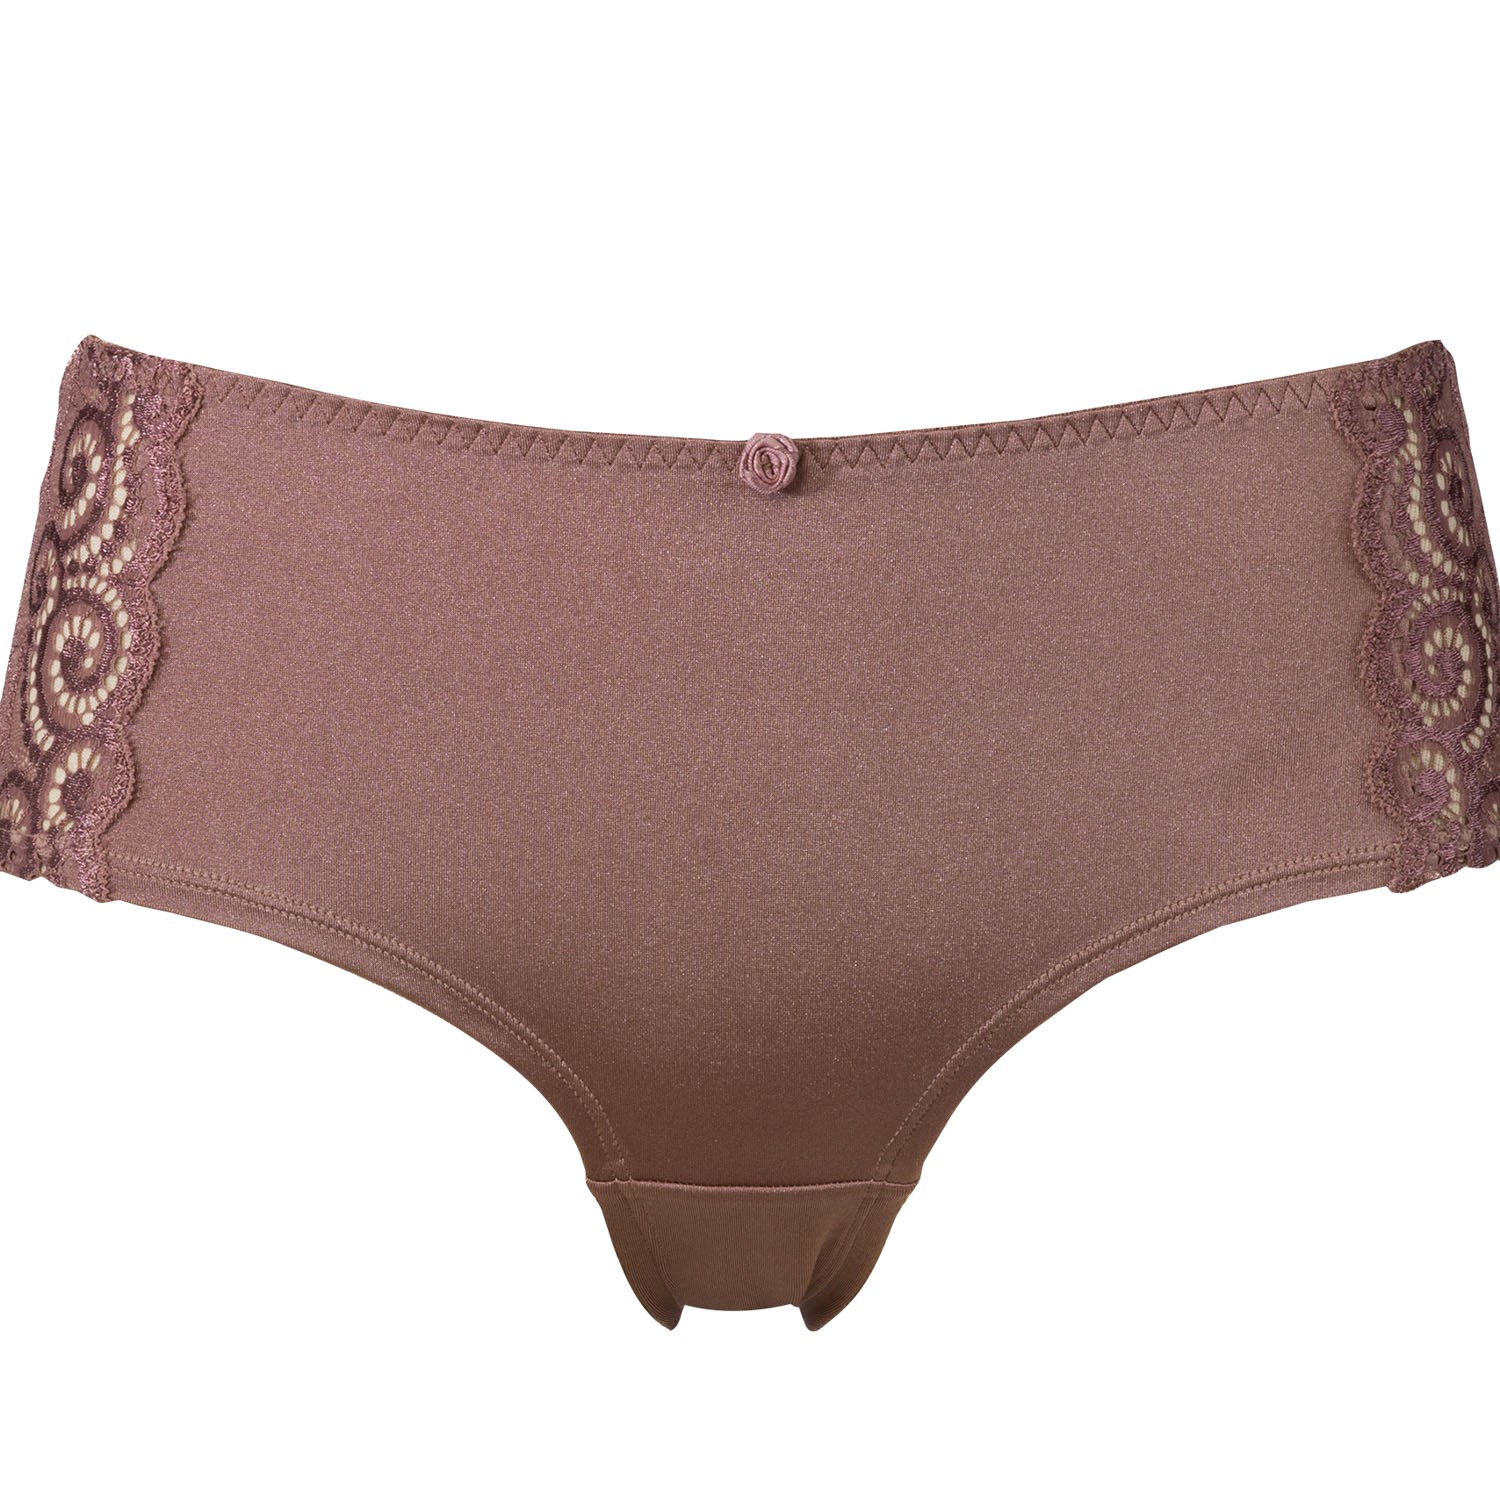 Sloggi Romance Midi - Midi - Briefs - Underwear - Timarco.co.uk